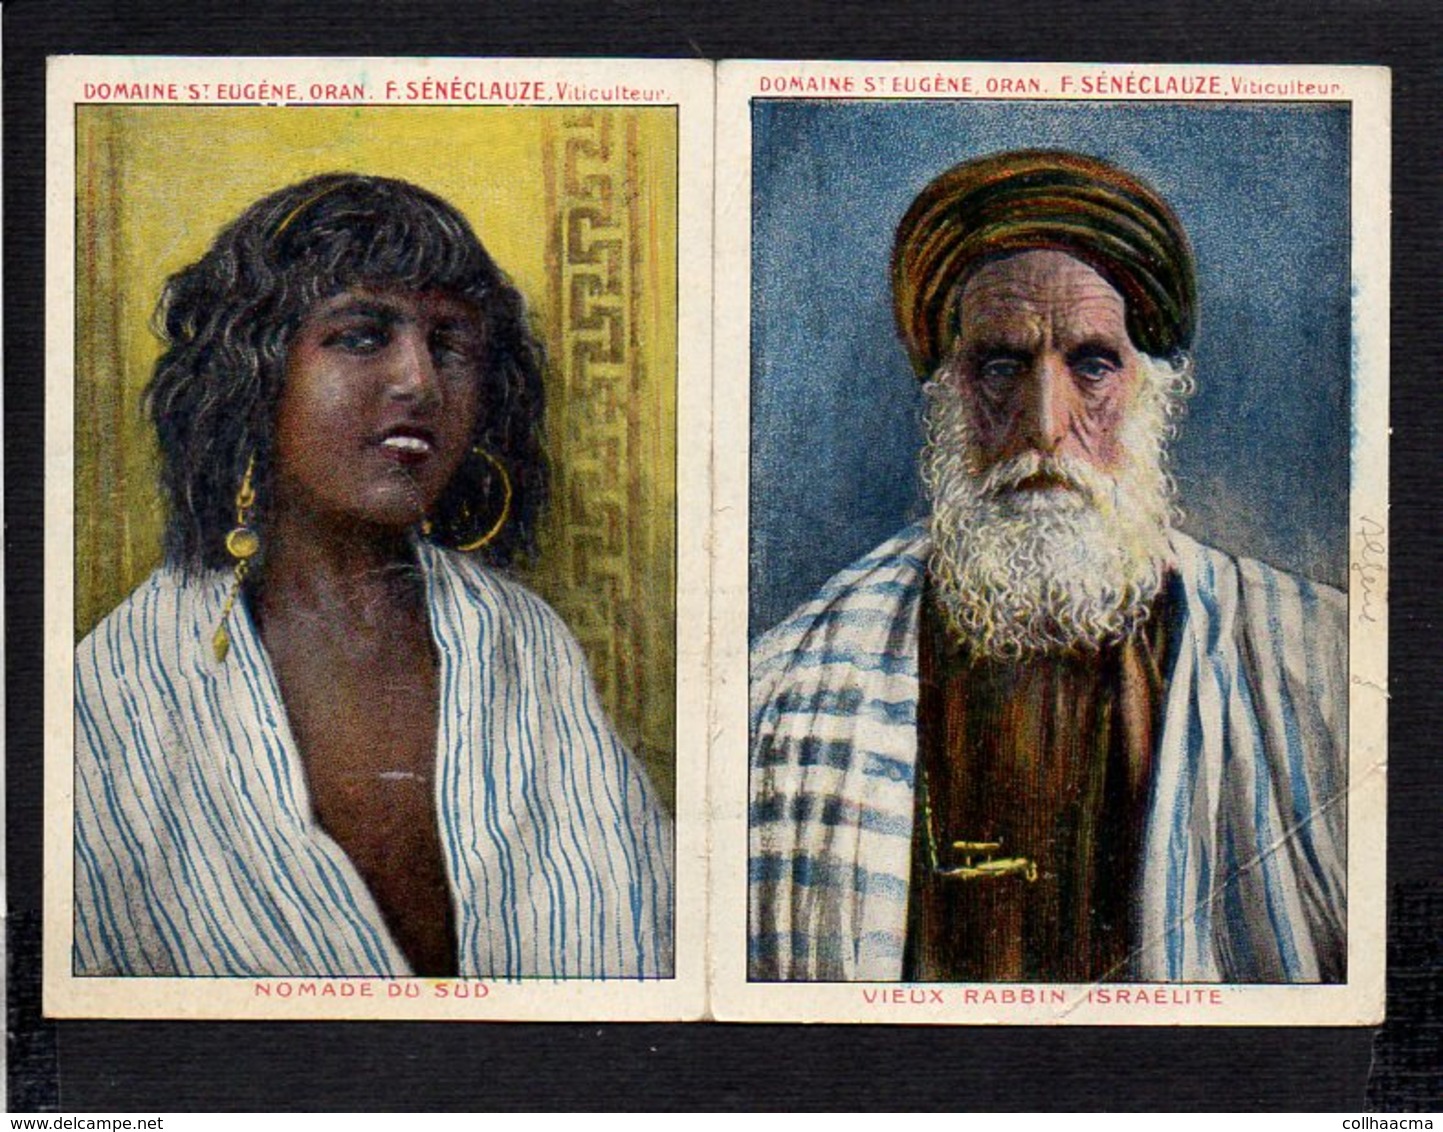 Algérie  / Carte Publicitaire Oran / F. Sénéclauze Domaine St Eugène Viticulteur 1916 / Nomade Et Rabbin Istraélite - Oran